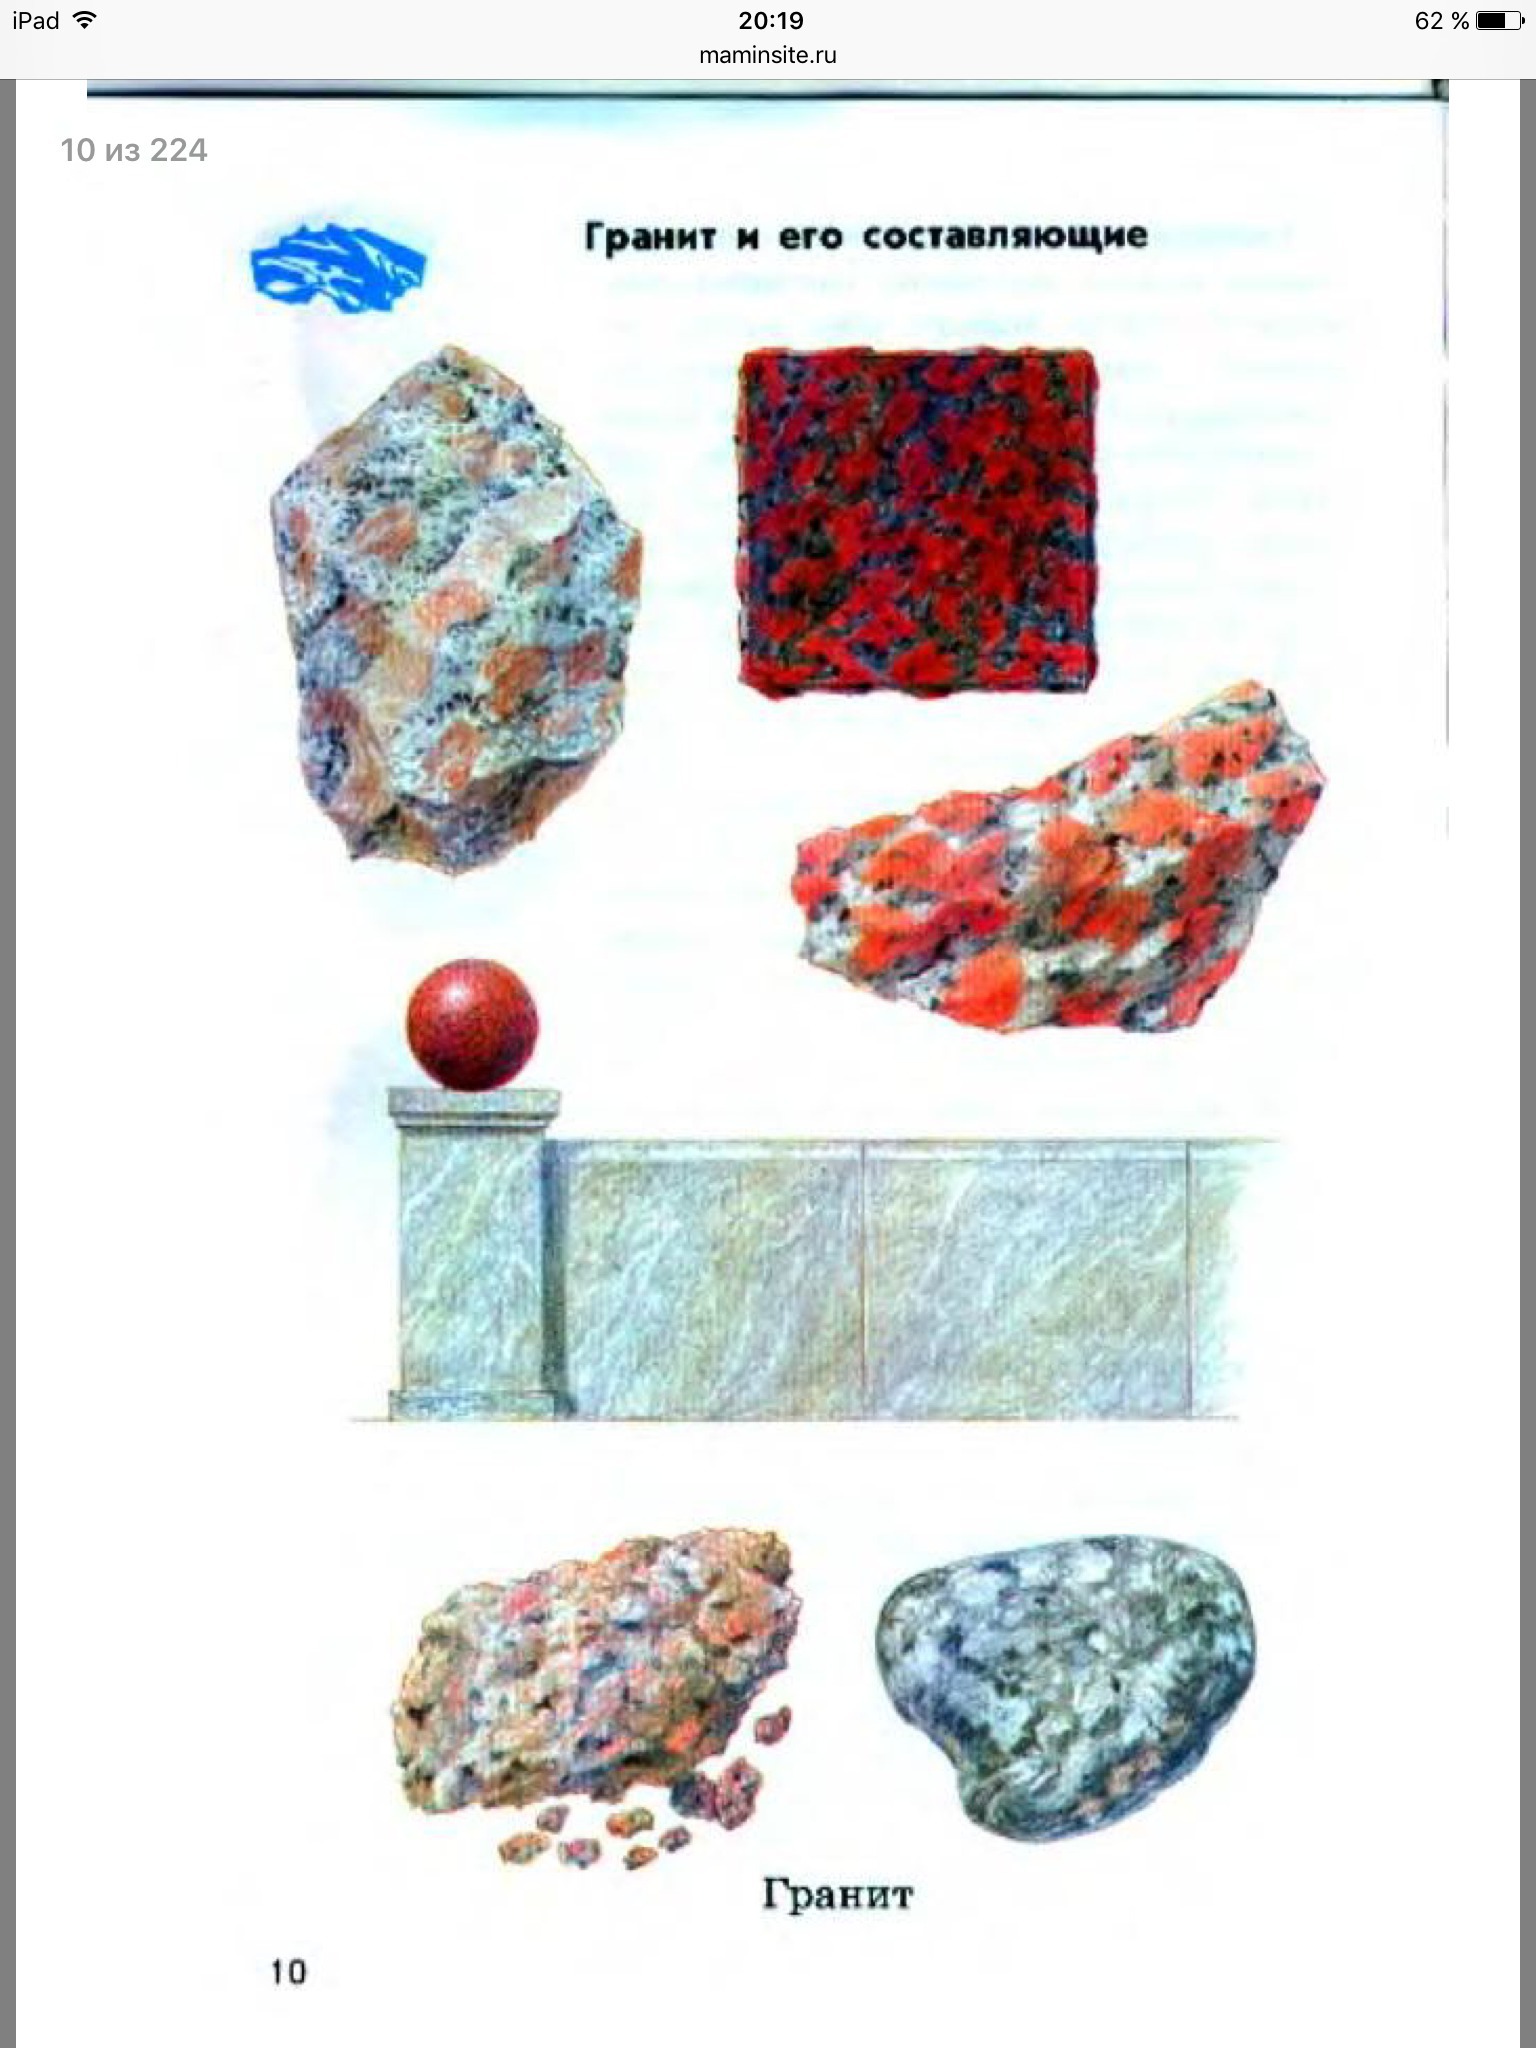 Камни гранит полевой шпат кварц слюда атлас-определитель